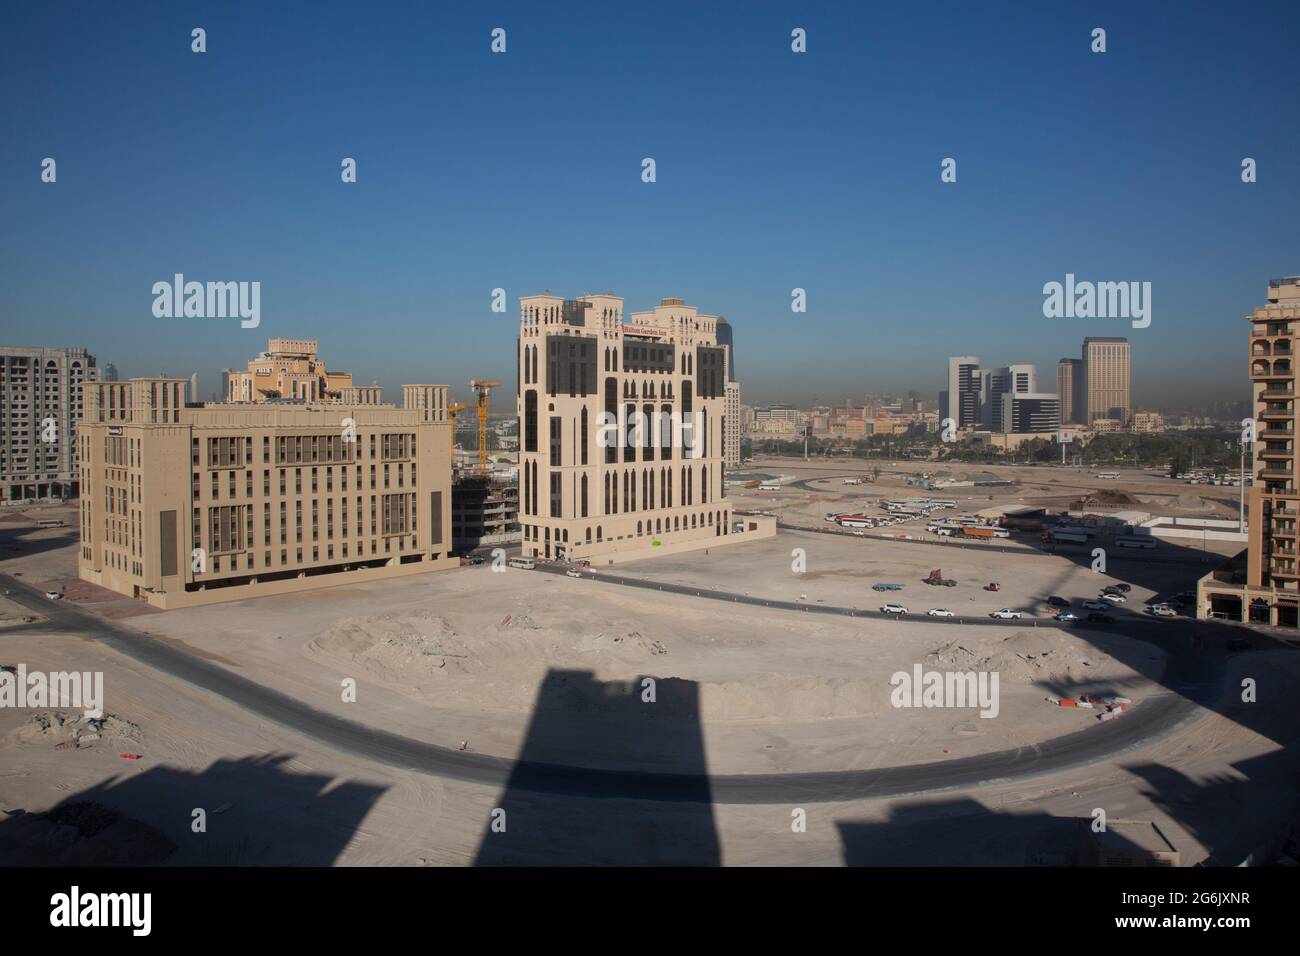 In attesa dell'EXPO 2020, in tutta Dubai verranno costruiti hotel nuovi di zecca. Foto Stock